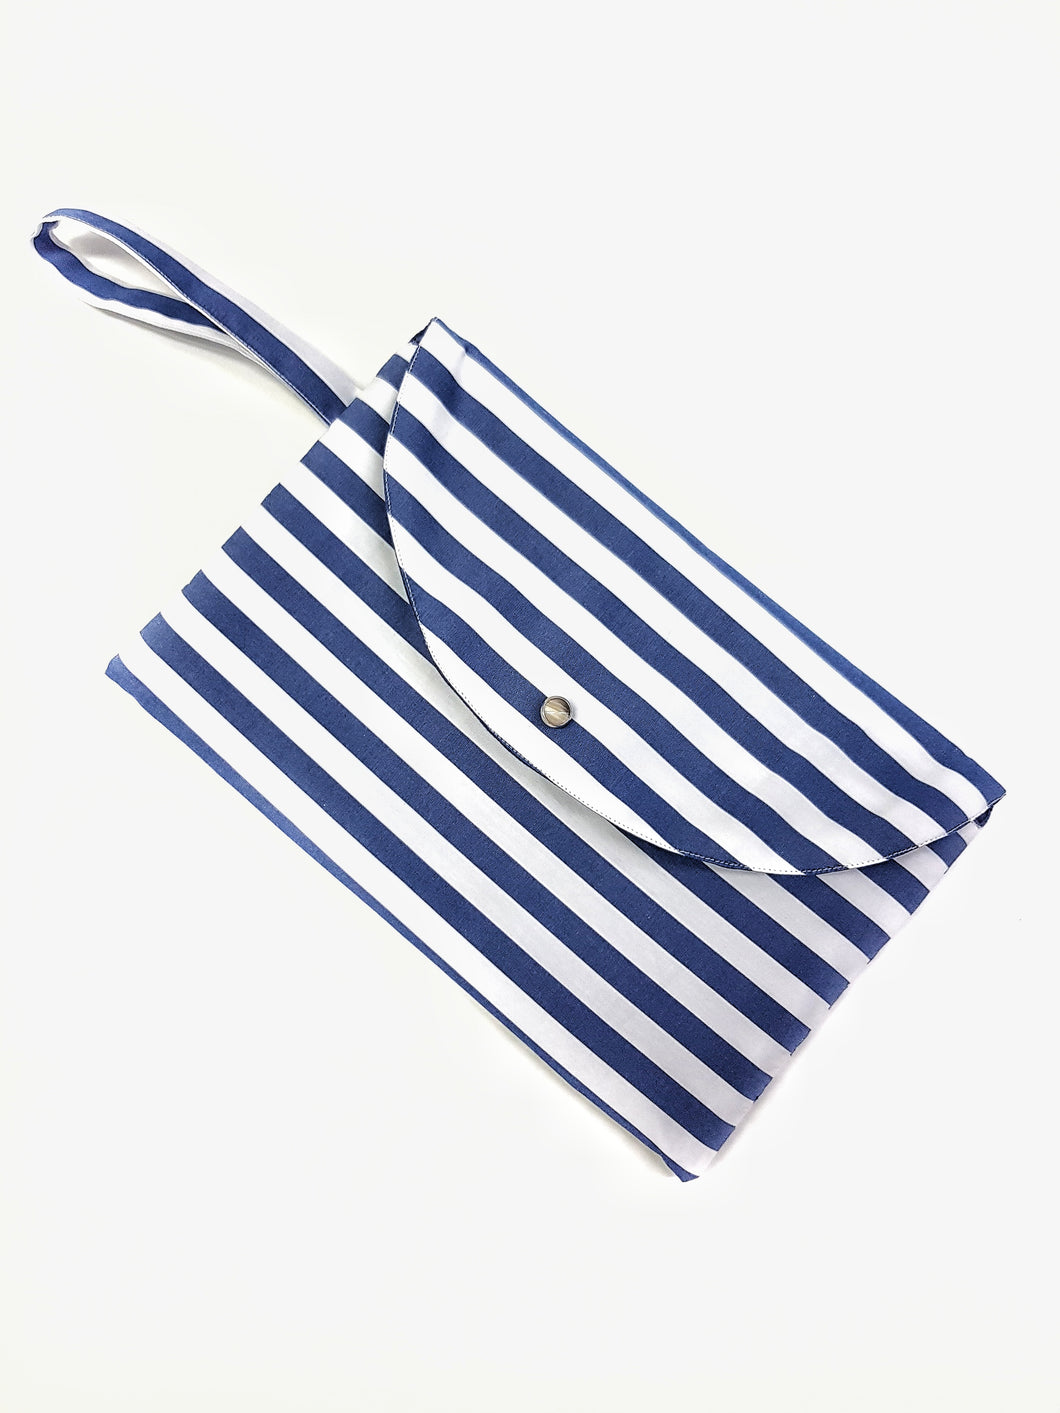 Pochette in tessuto fashion design fasciato bianco blu stripe marine Made in Italy